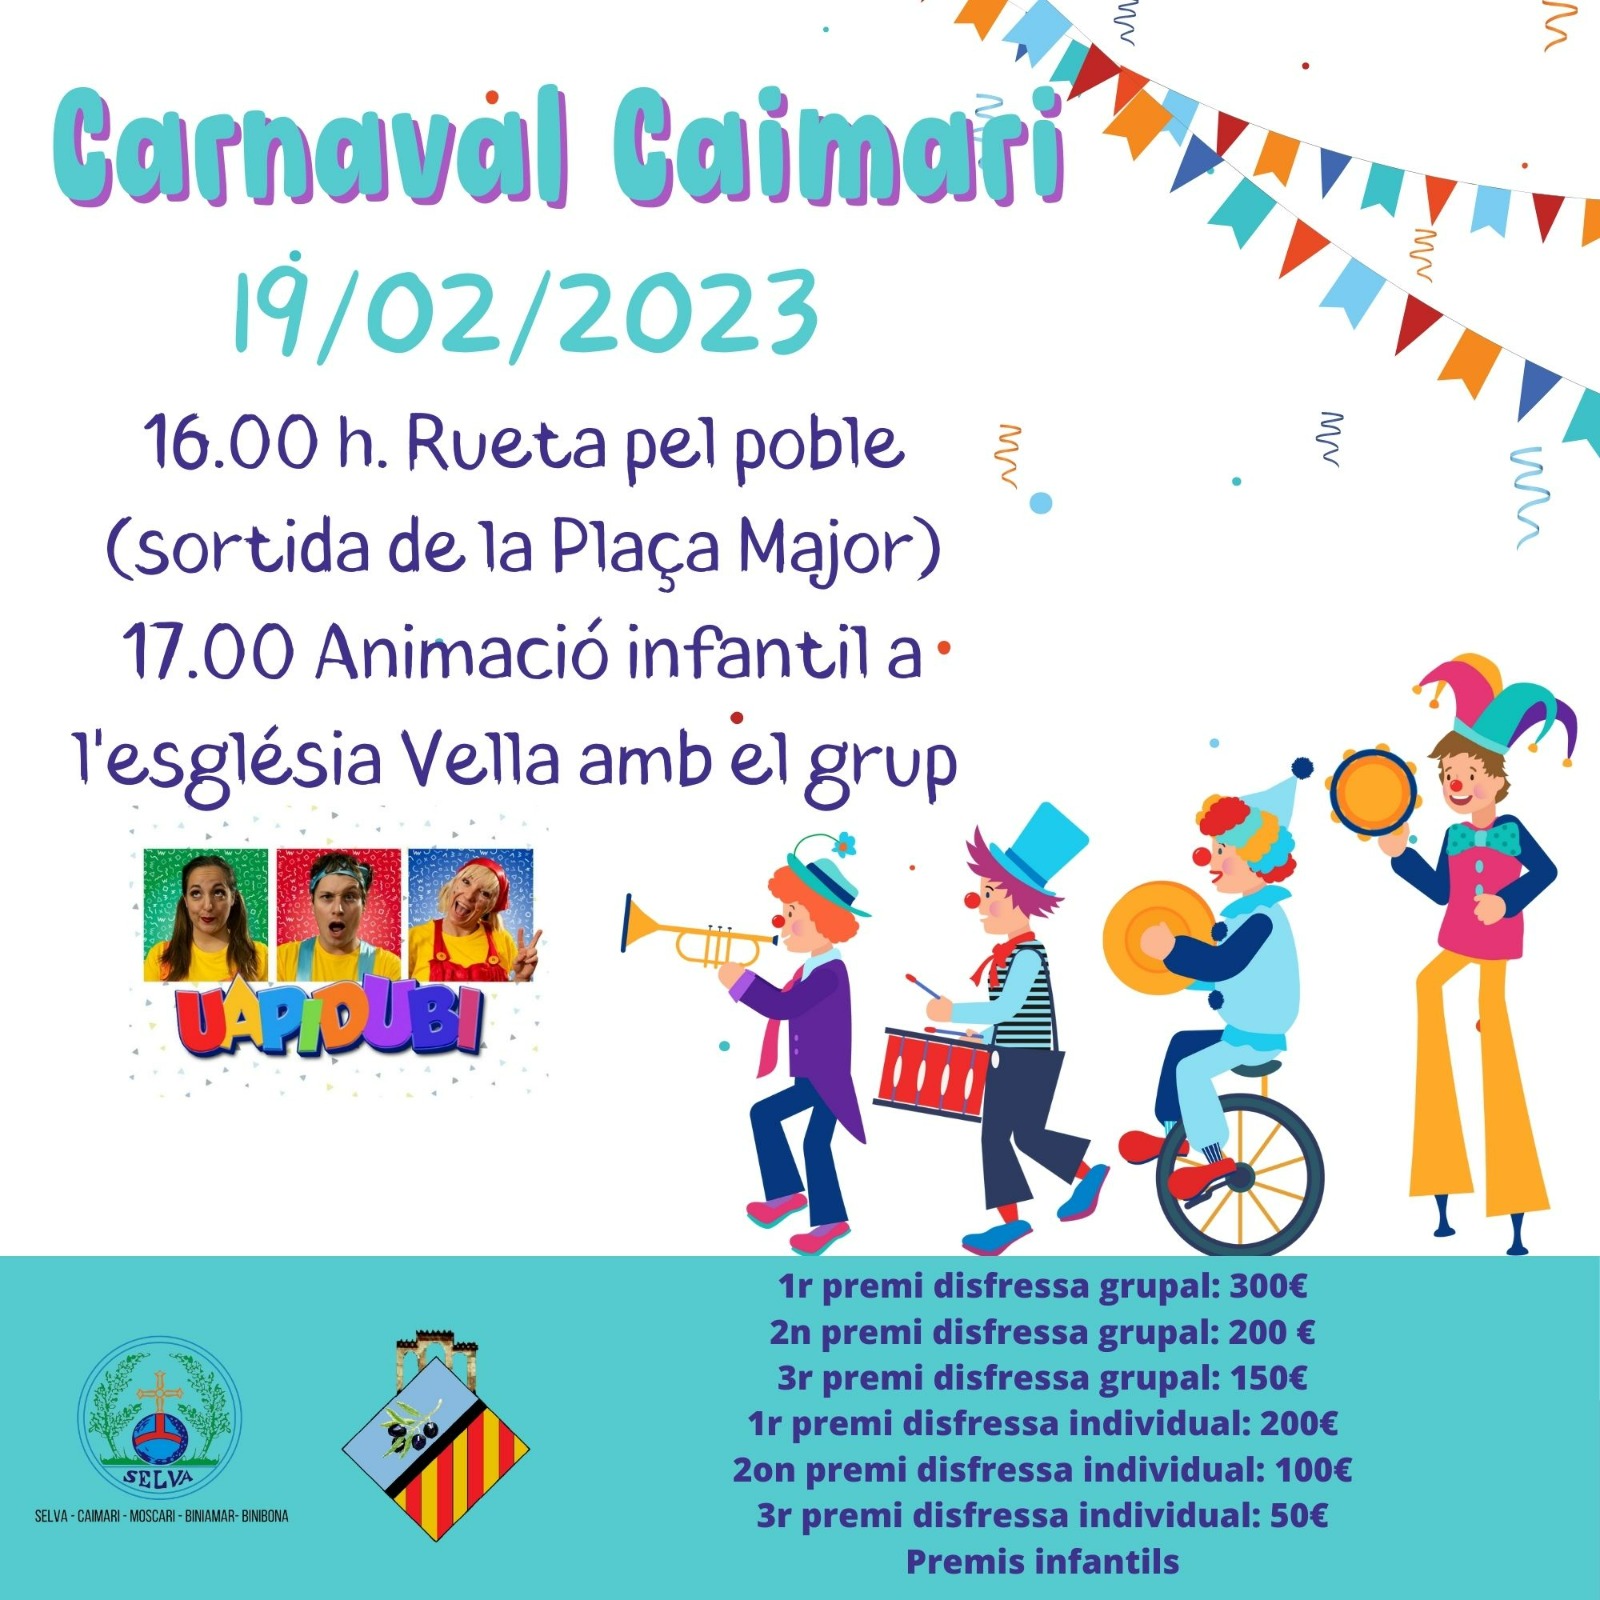 Carnaval Caimari 2023